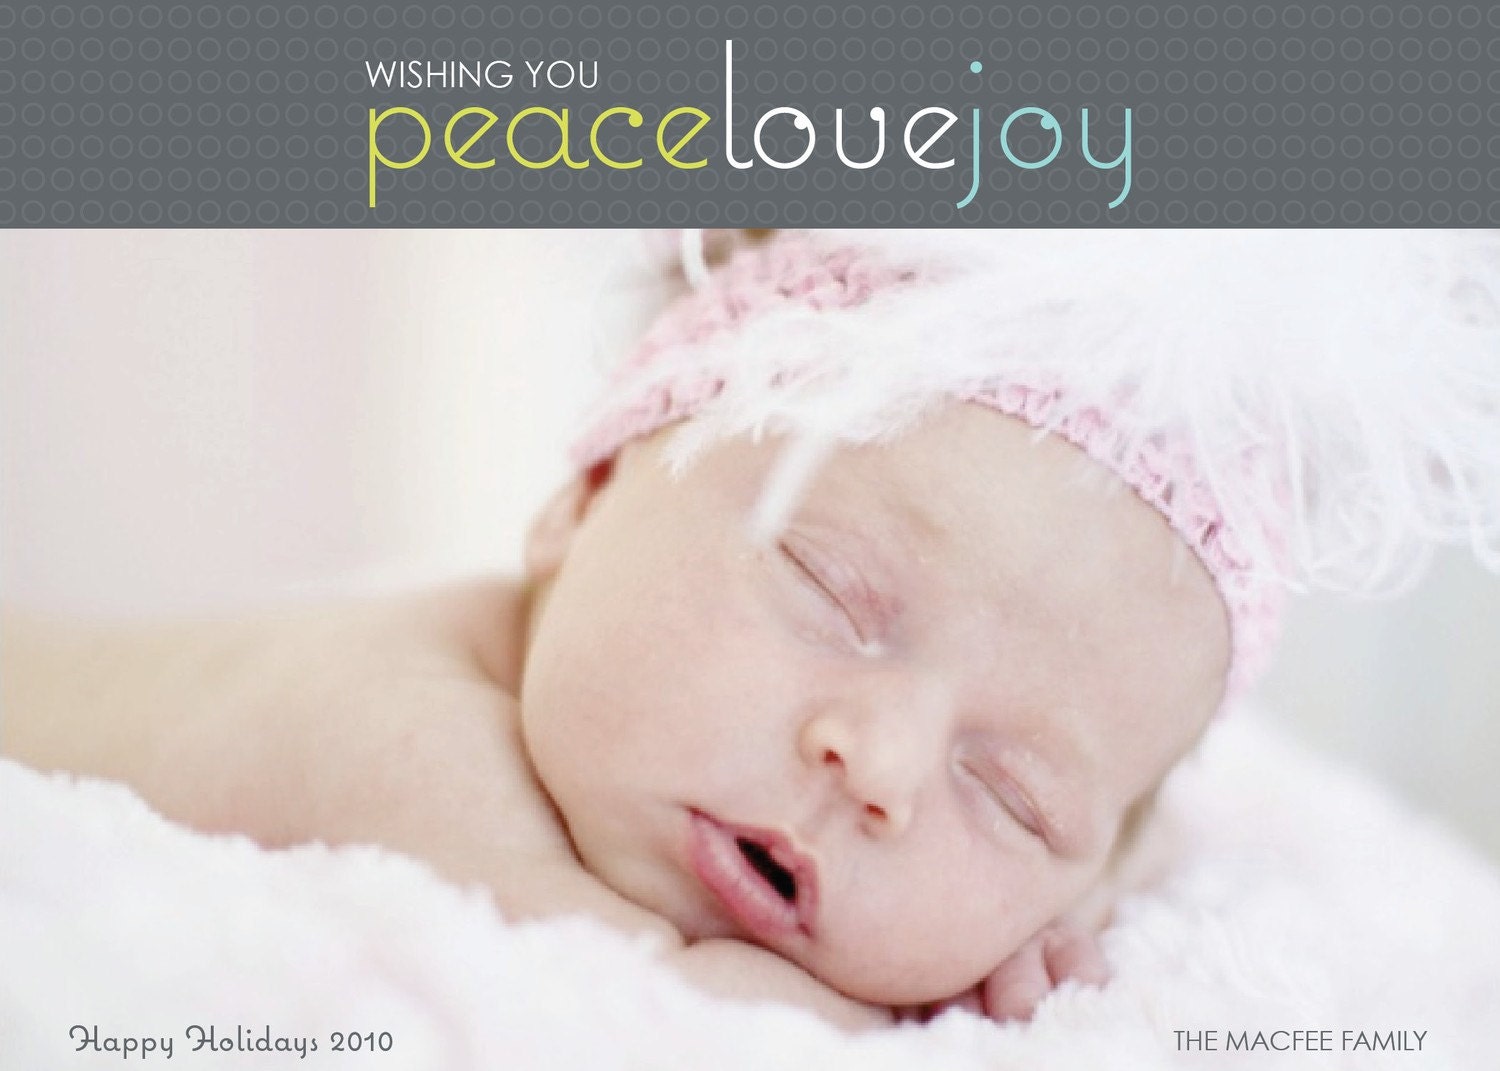 Peace Love Joy Holiday Photo Card